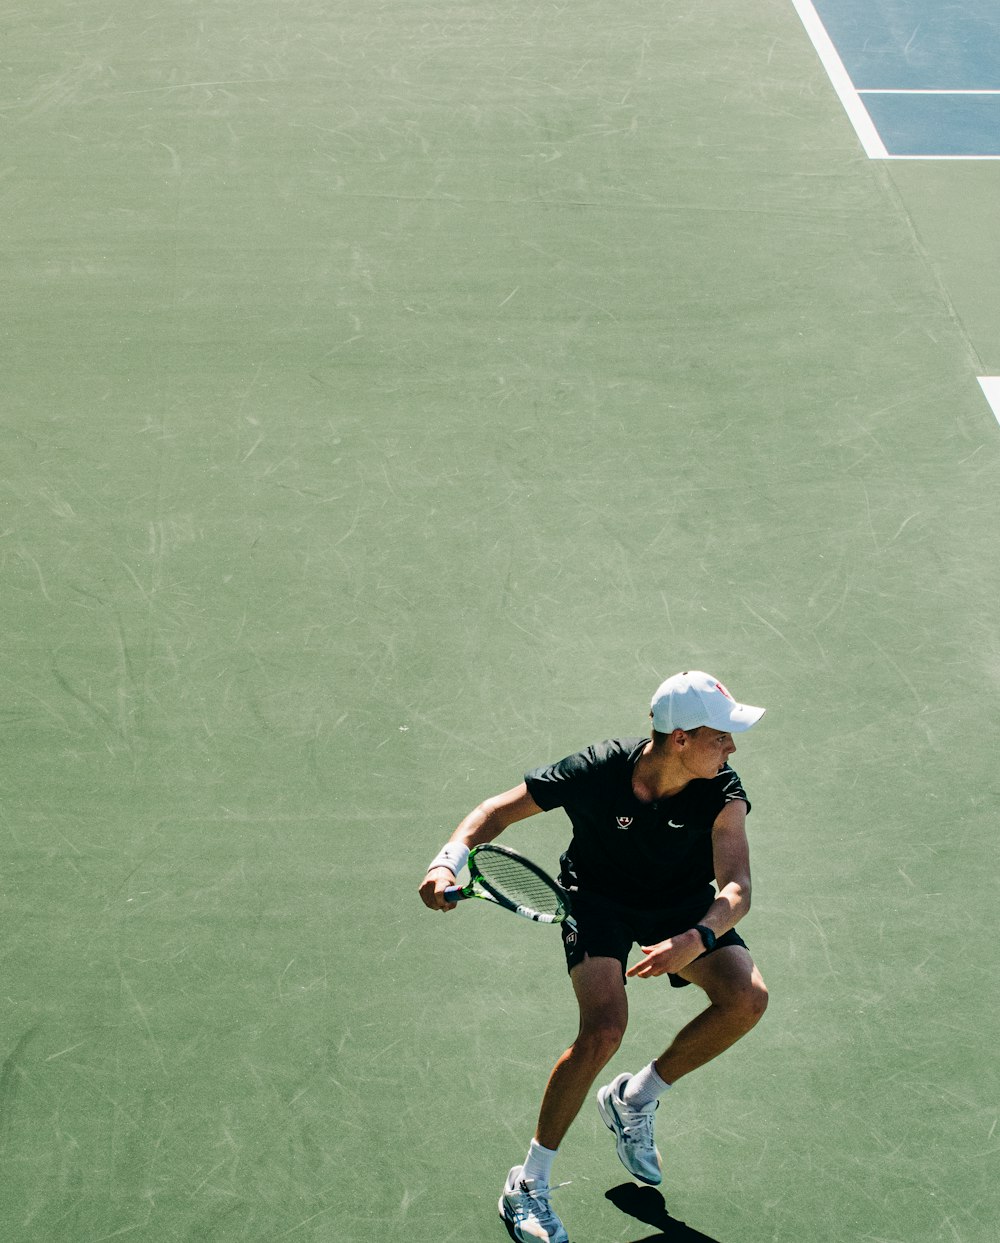 테니스 코트에서 테니스 라켓을 들고 있는 여성